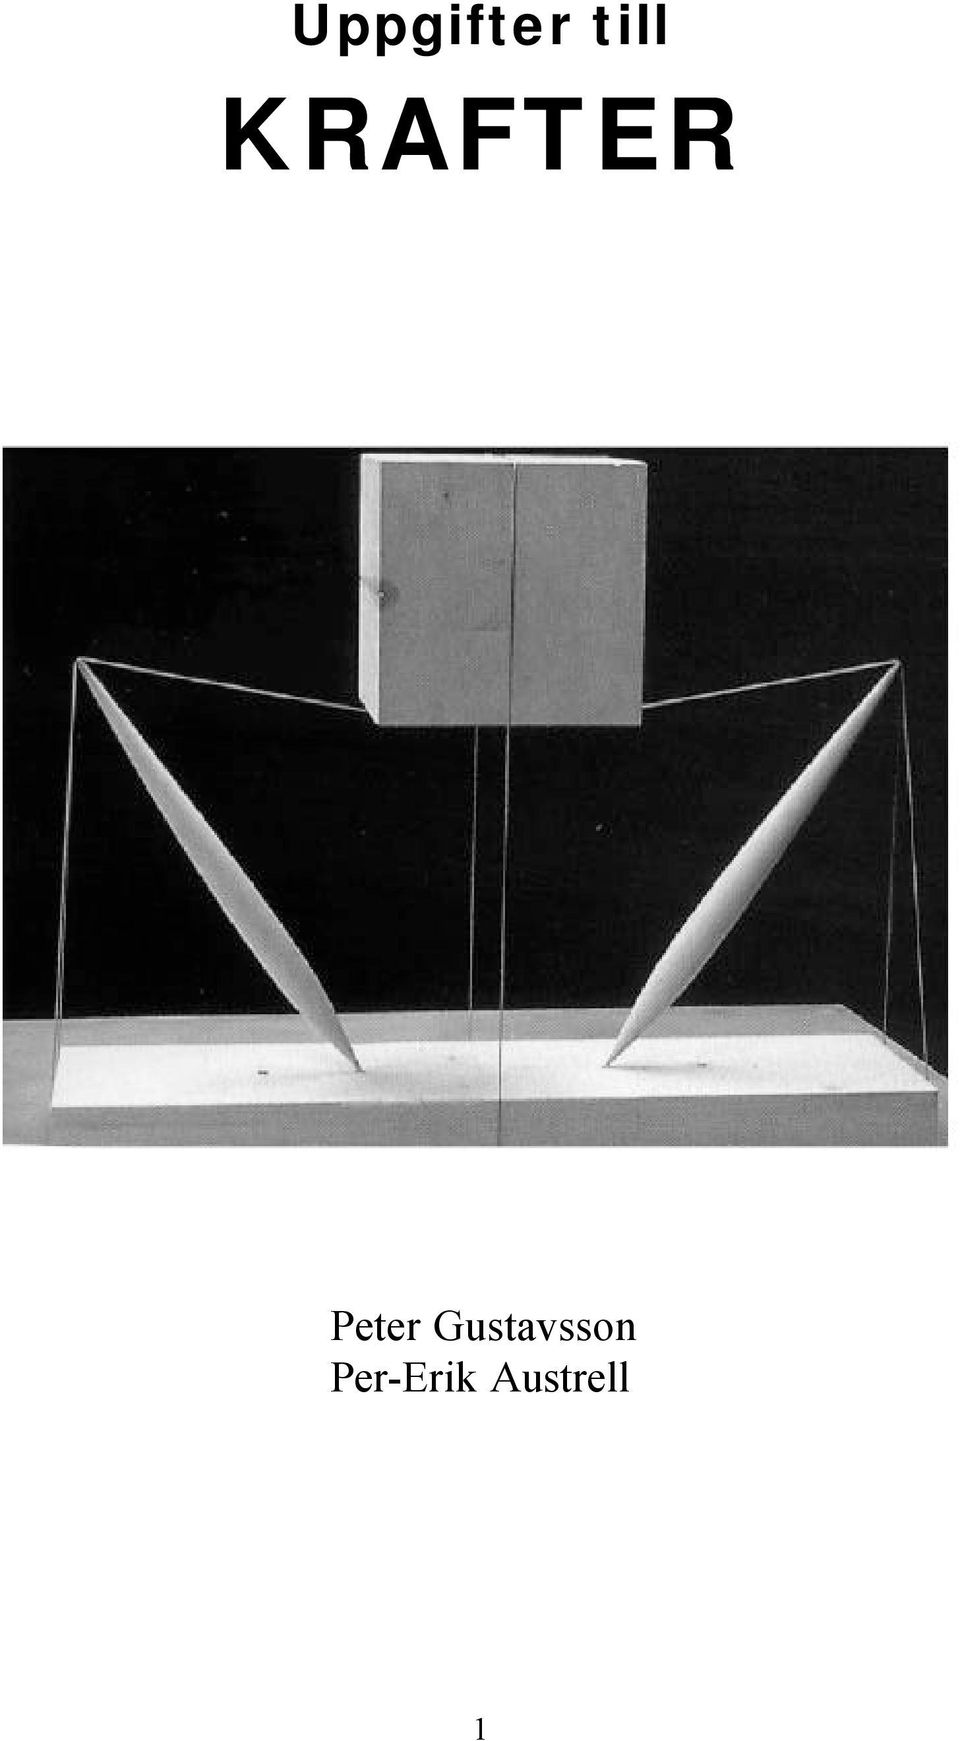 Gustavsson